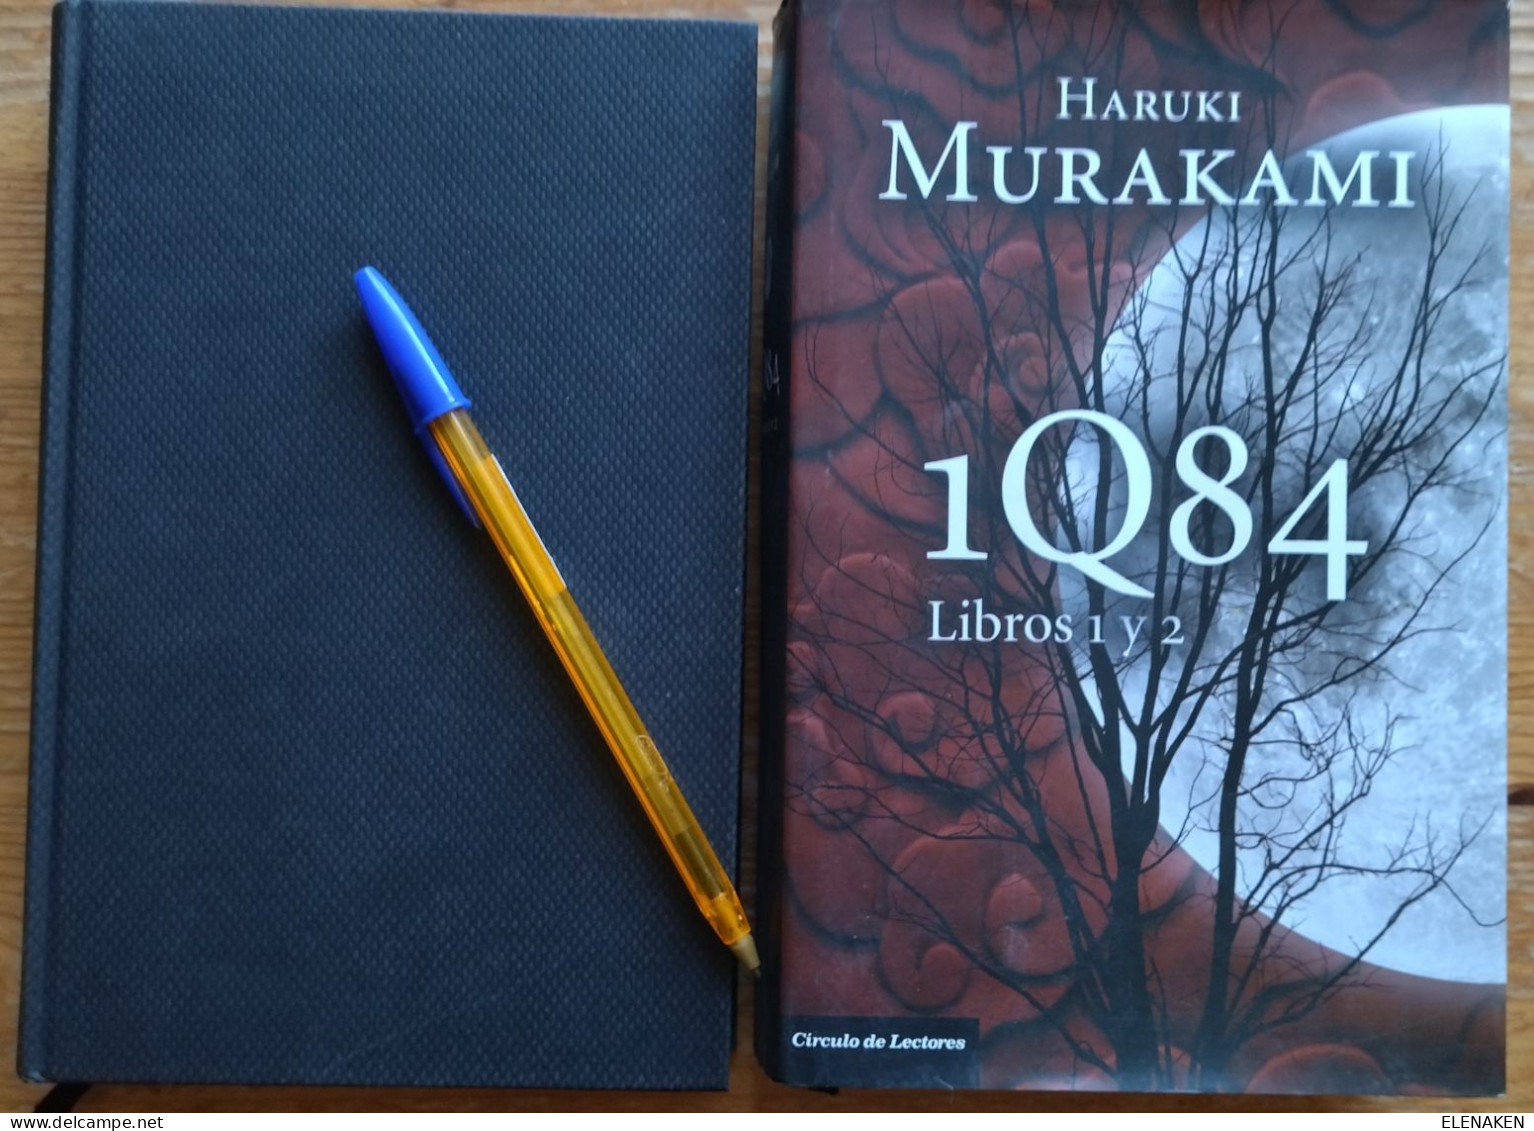 3 LIBROS Título:1Q84.  Autor:Murakami, Haruki  CIRCULO LECTORES   Año:2011  Género:Novela Japonesa Siglo XX  Páginas:874 - Cultural